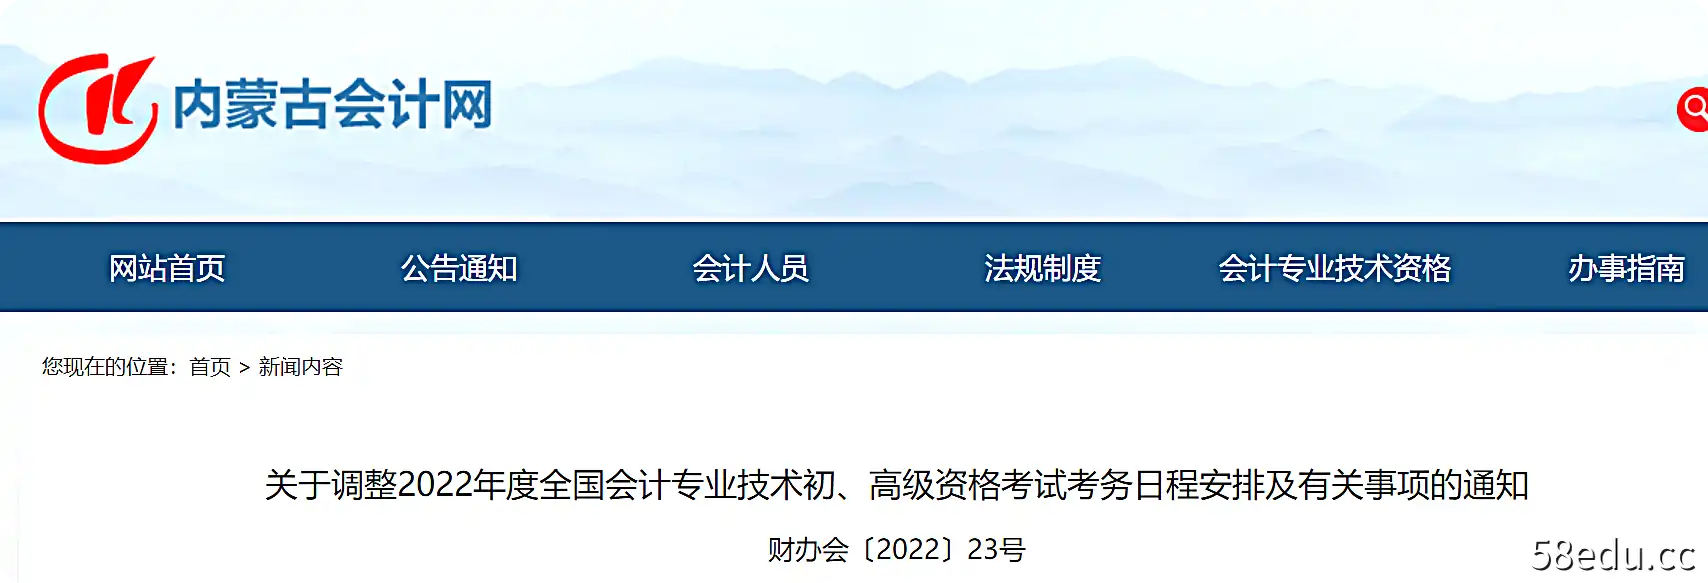 内蒙古关于调整2022年初级会计考试时间安排及有关事项的通知